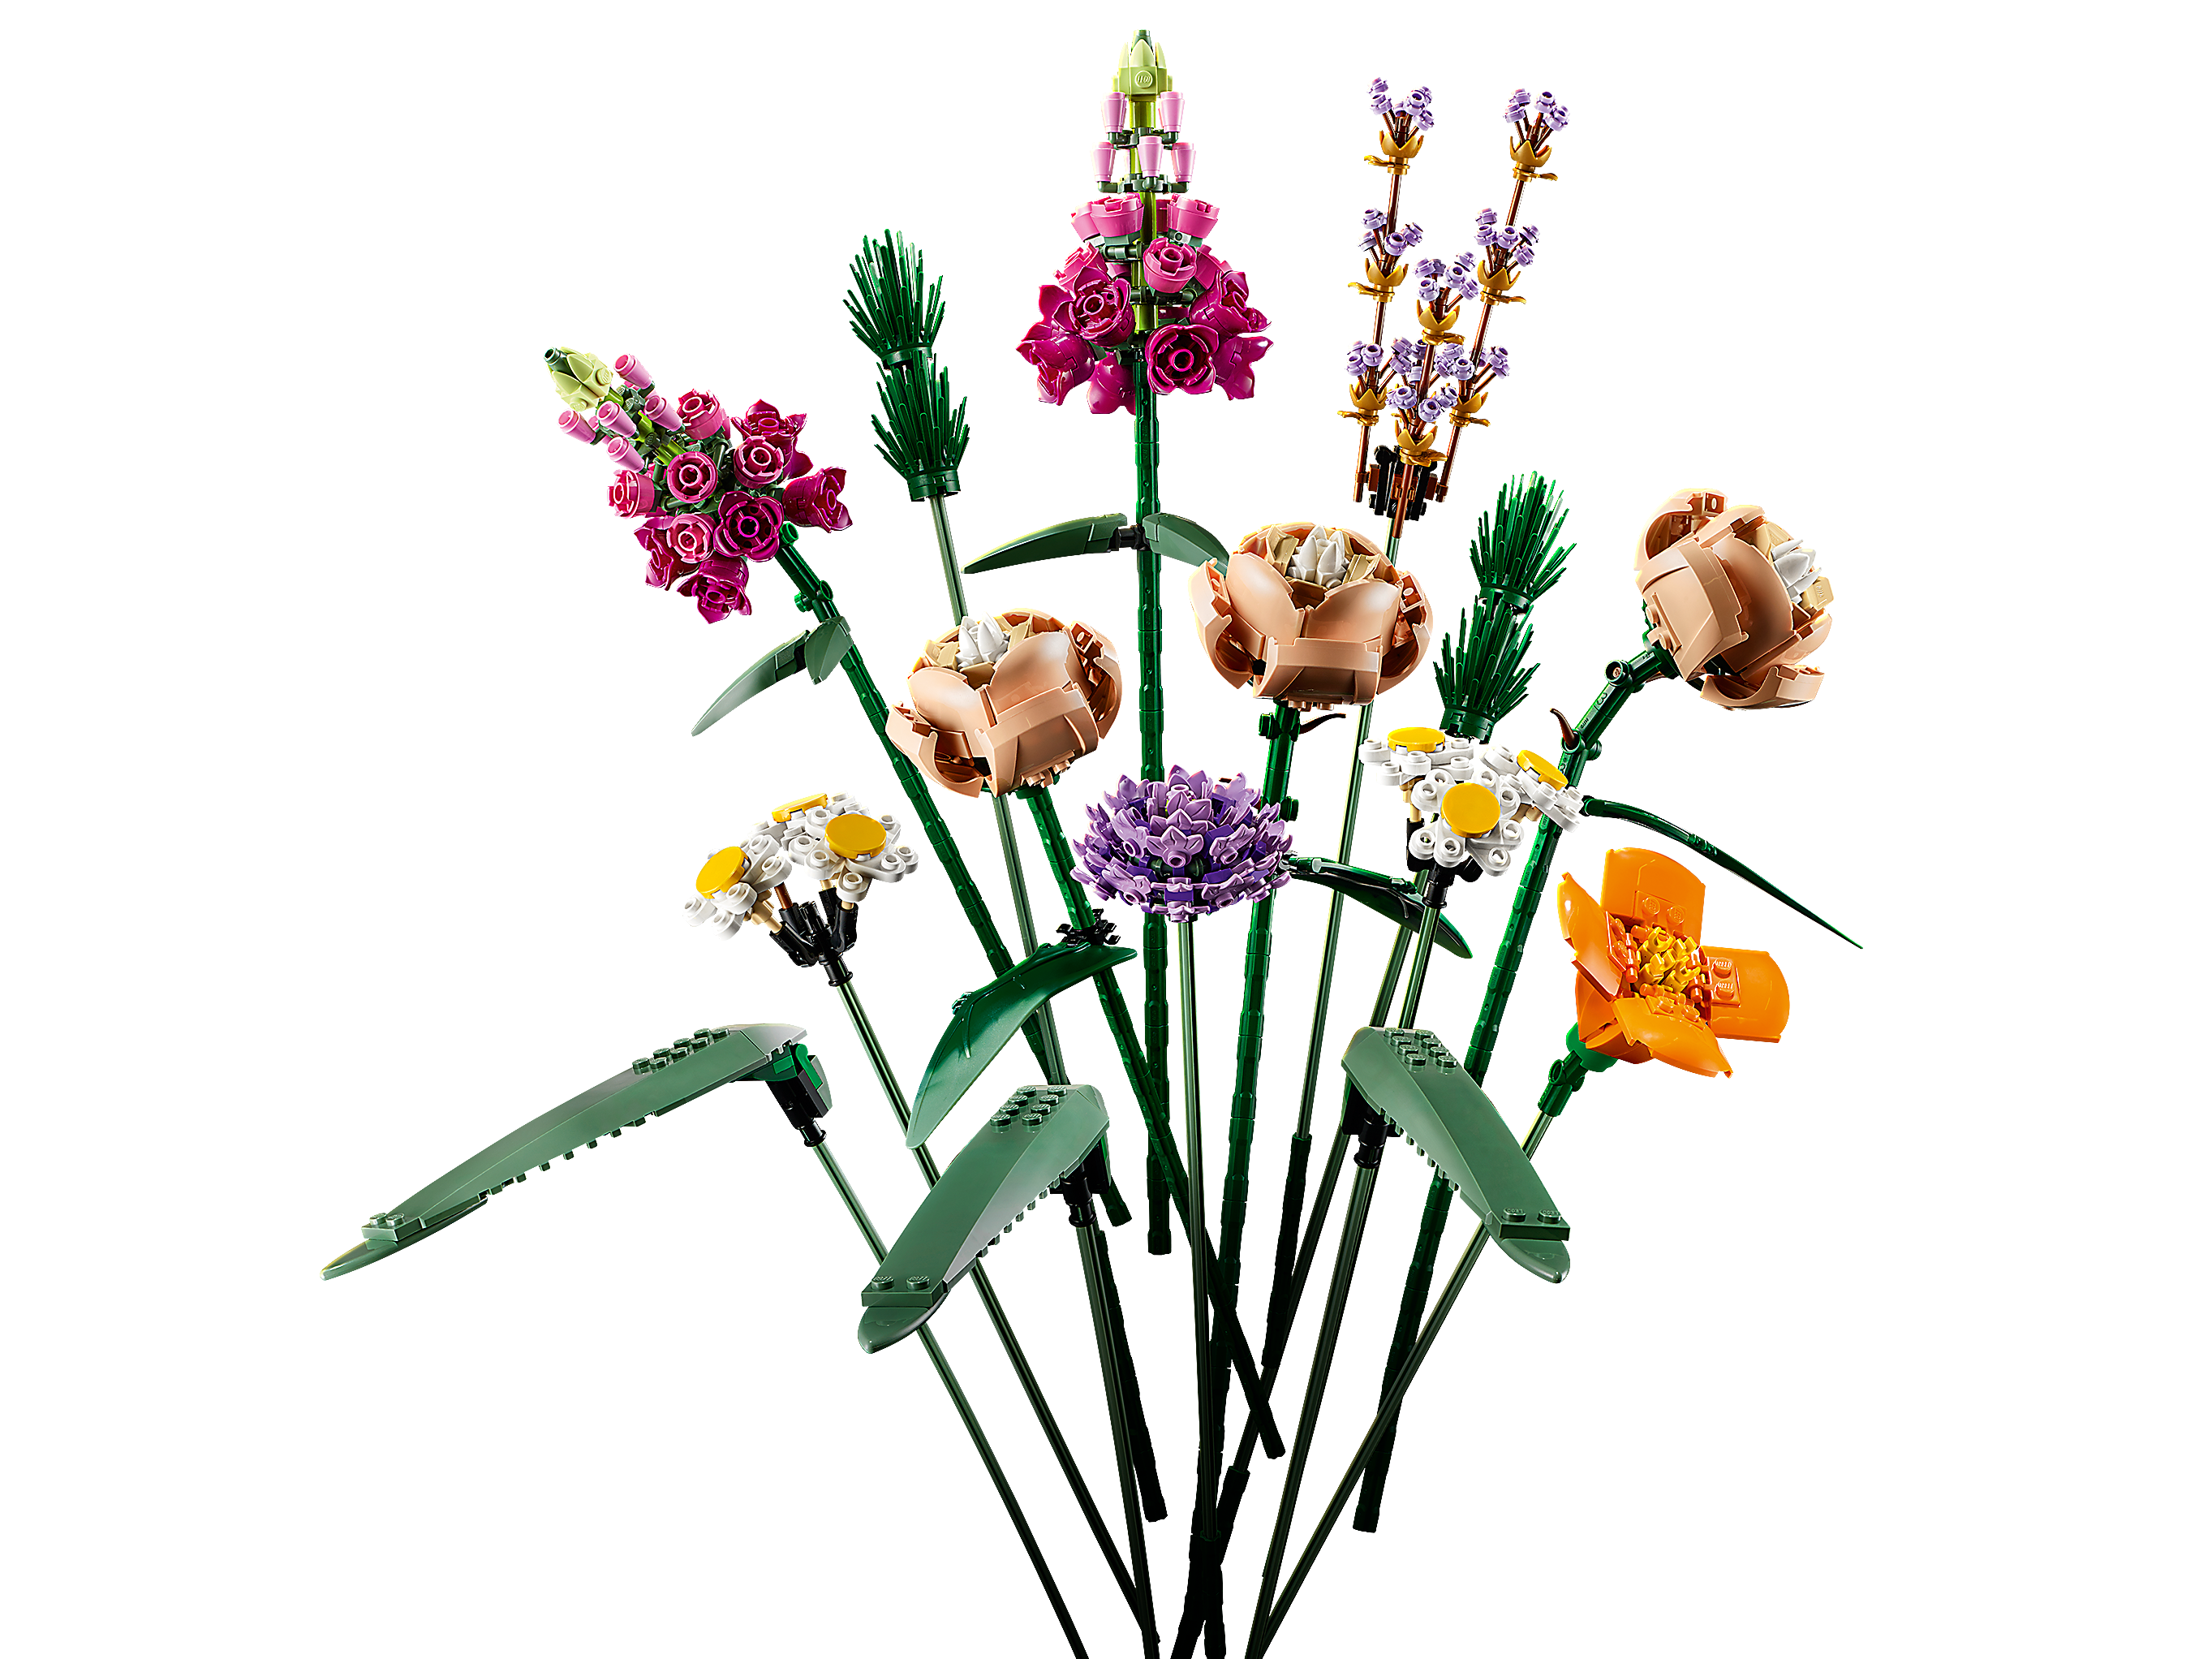 Lego Botanical Collection selección rosas/ramo de flores/girasoles/tulipanes